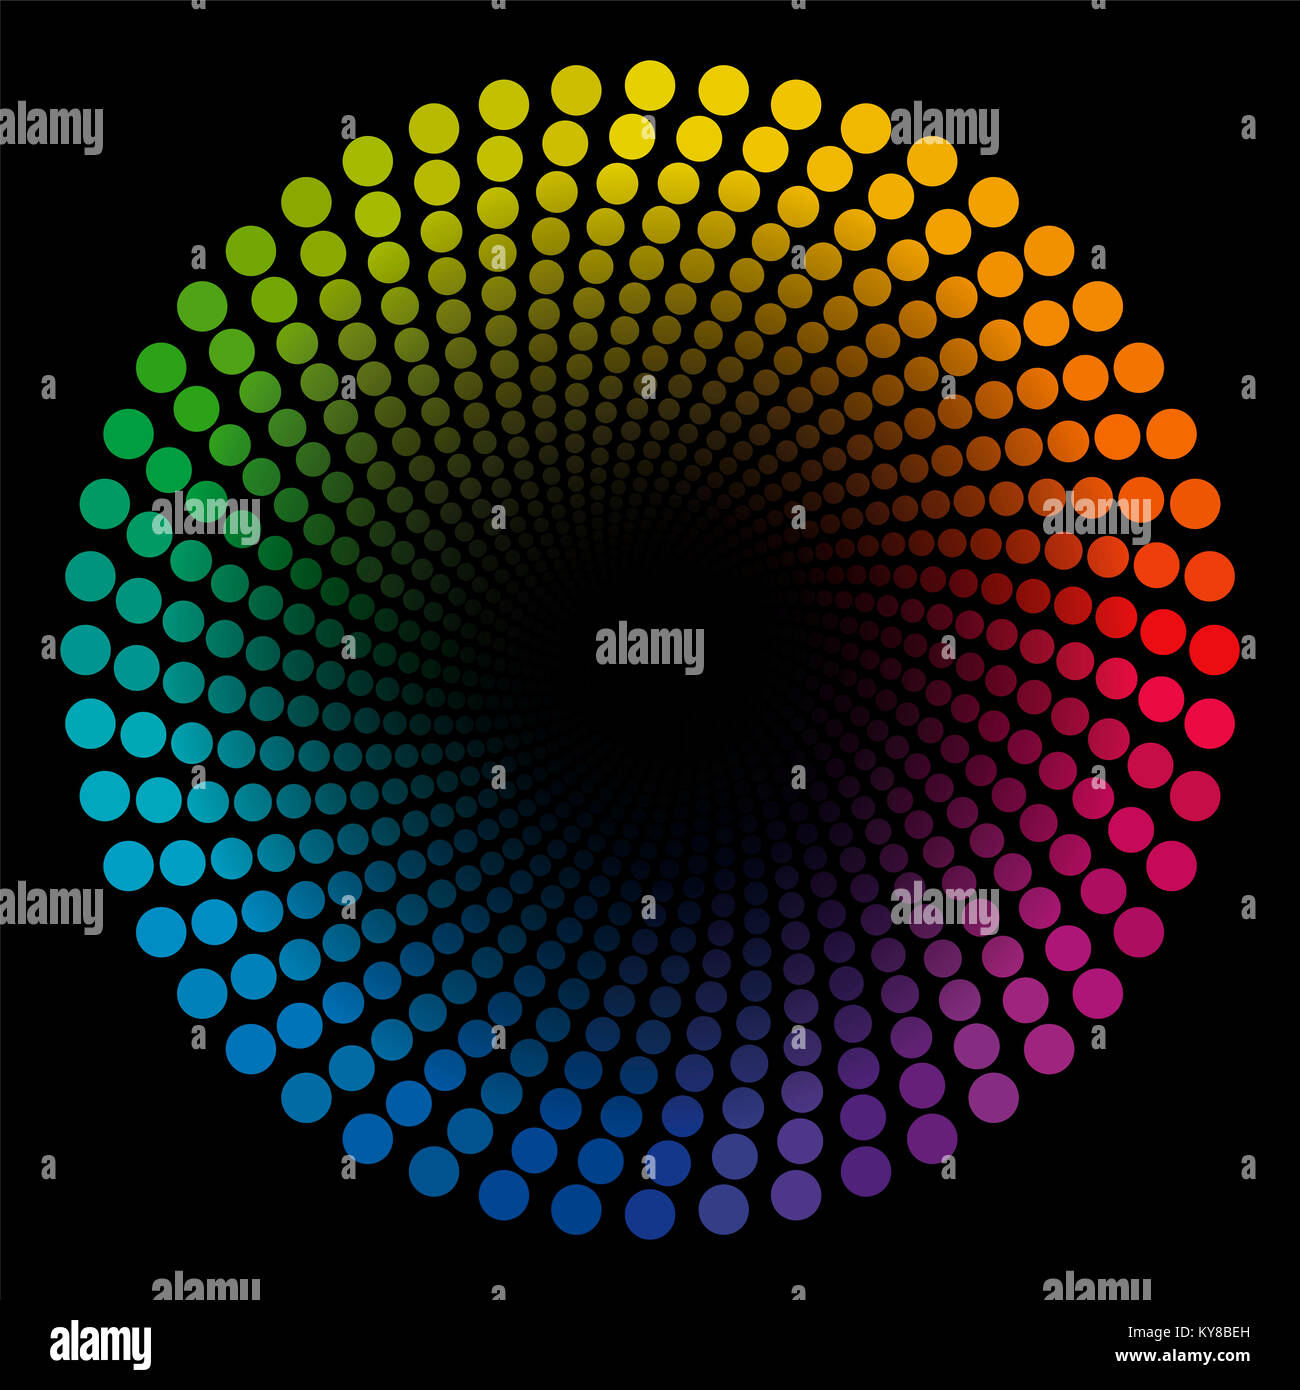 Spirale de couleur motif dots - tube de couleur arc-en-ciel circulaire torsadée géométrique illustration avec centre noir qui semble élargir - illusion d'optique. Banque D'Images